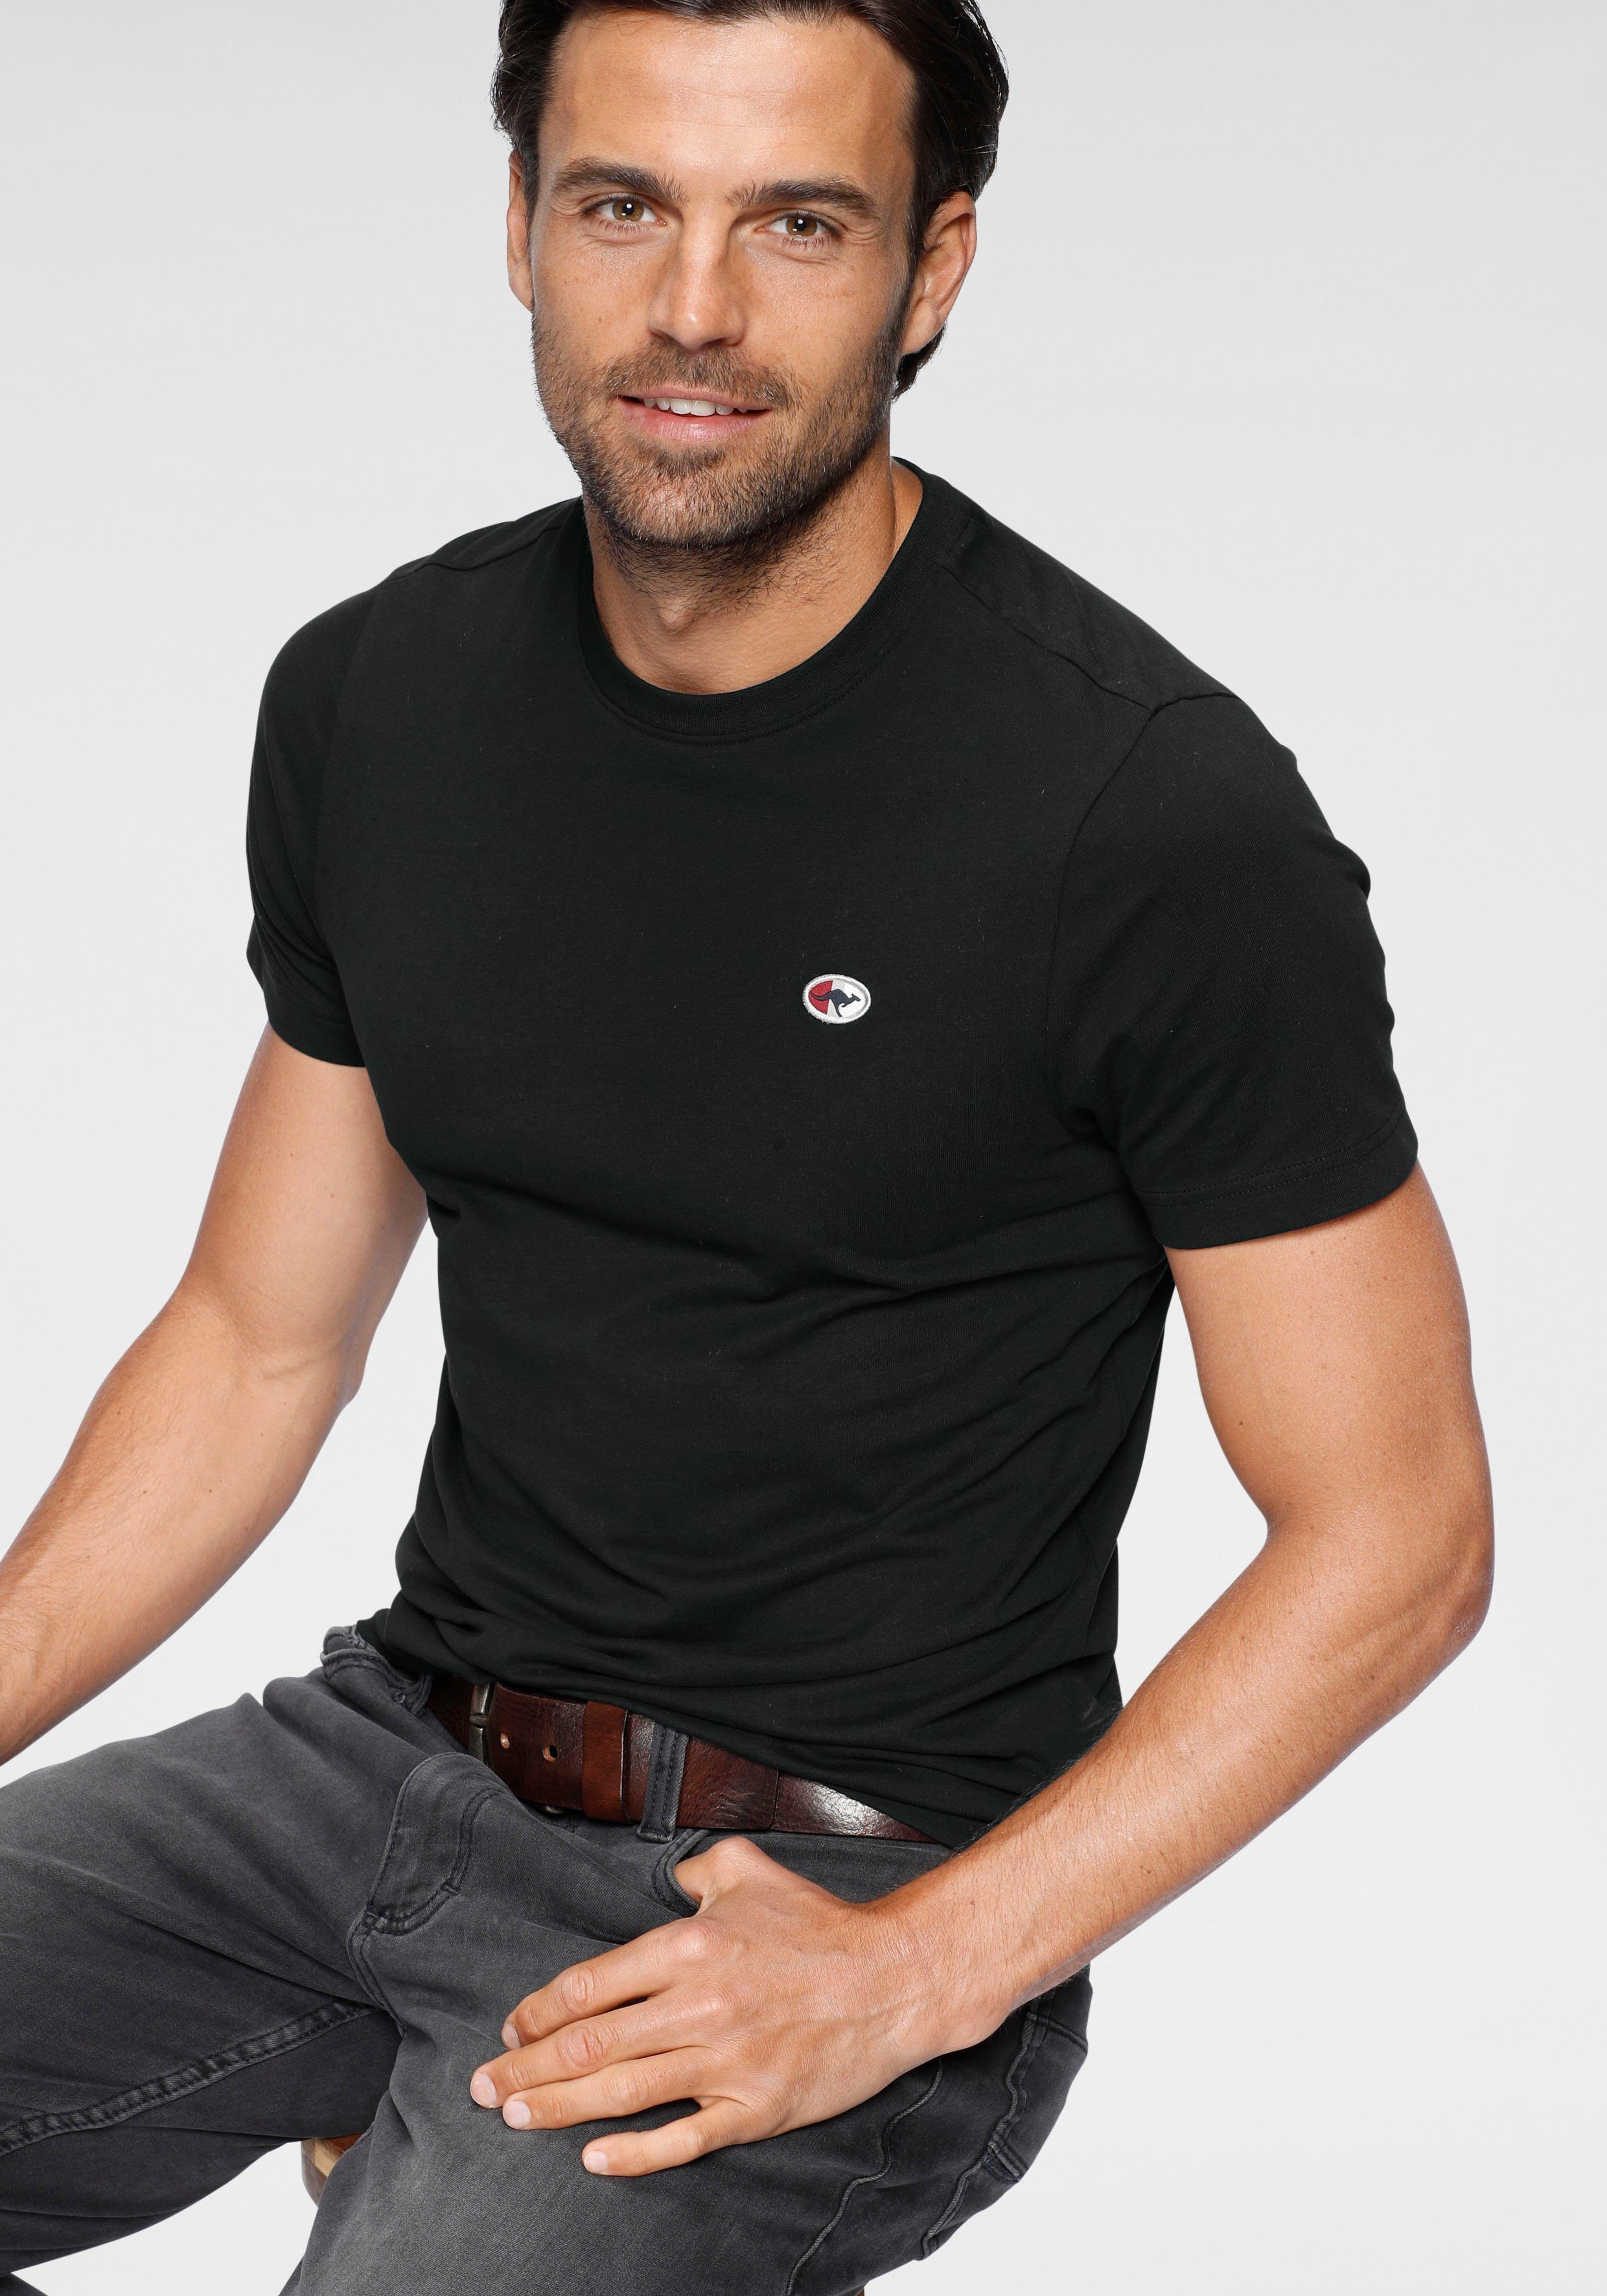 KangaROOS T-Shirt unifarben schwarz | T-Shirts